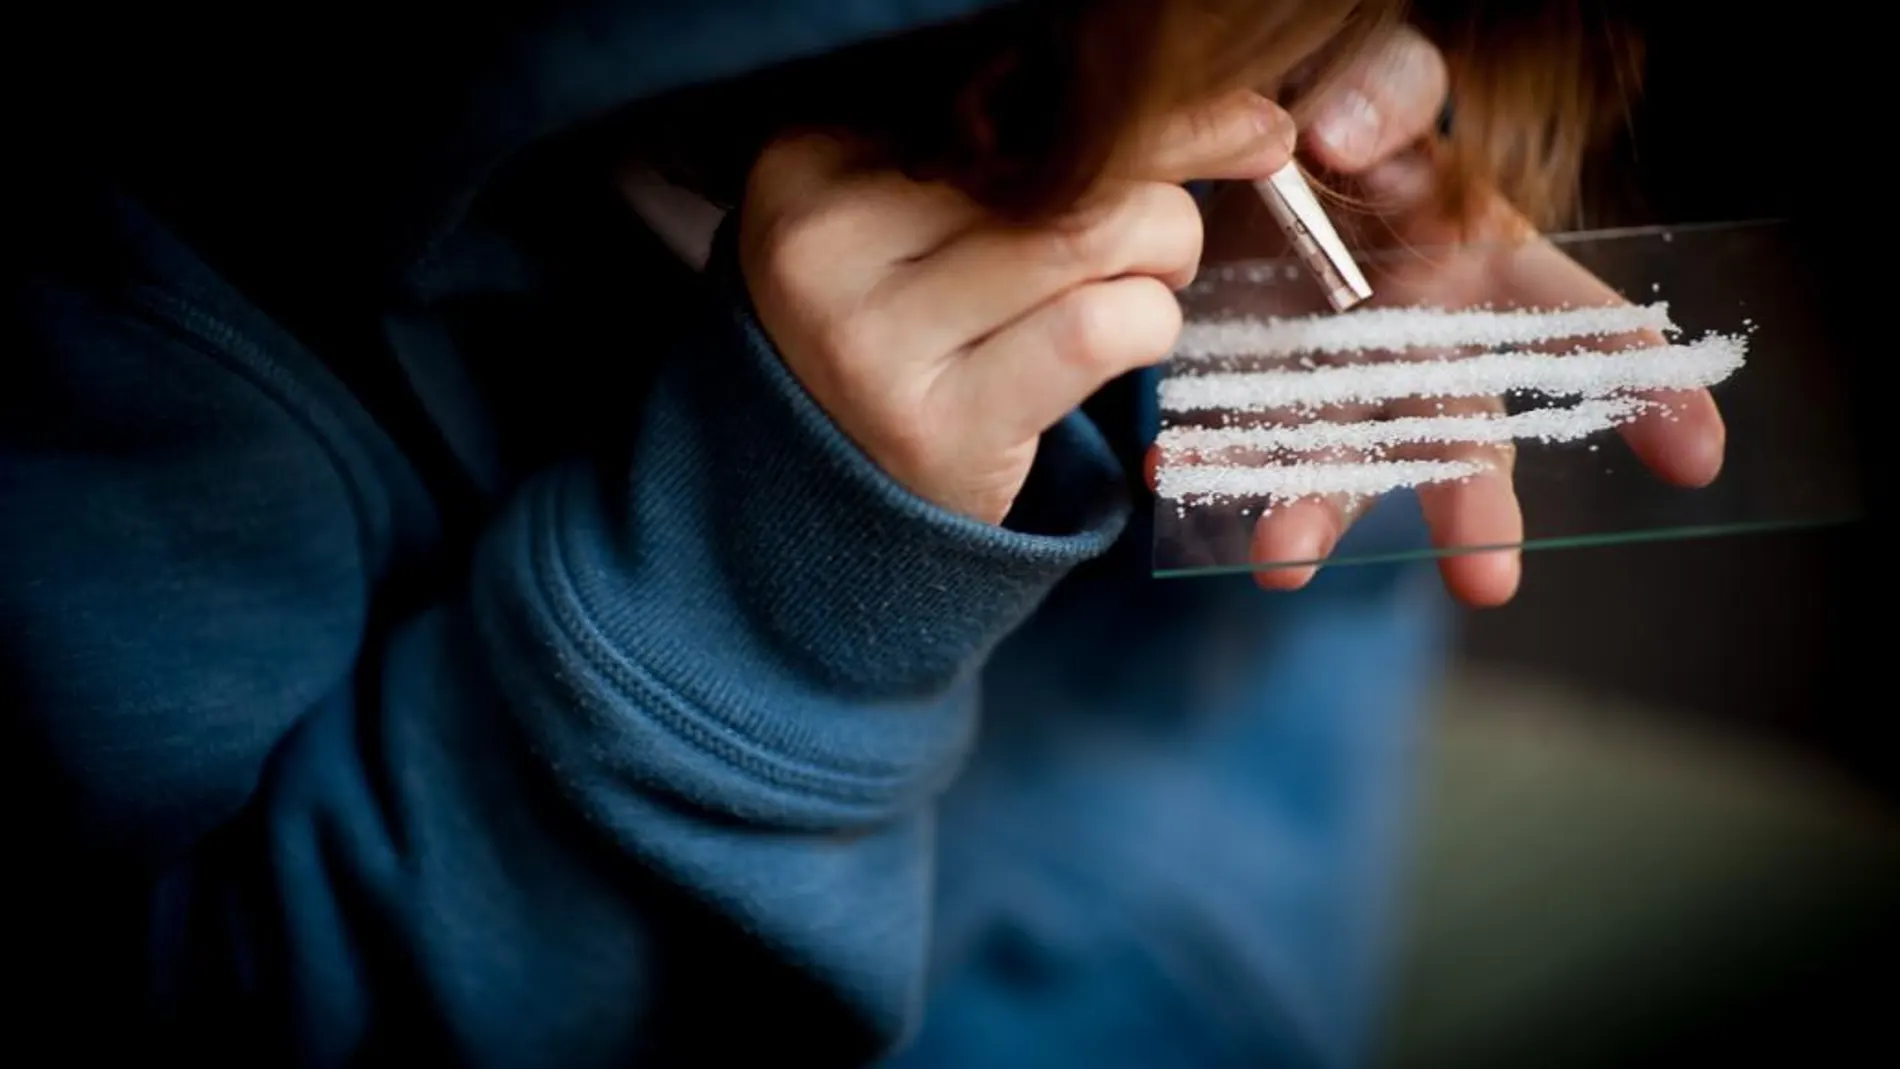 Estudio muestra por primera vez las alteraciones cerebrales que causa cocaína